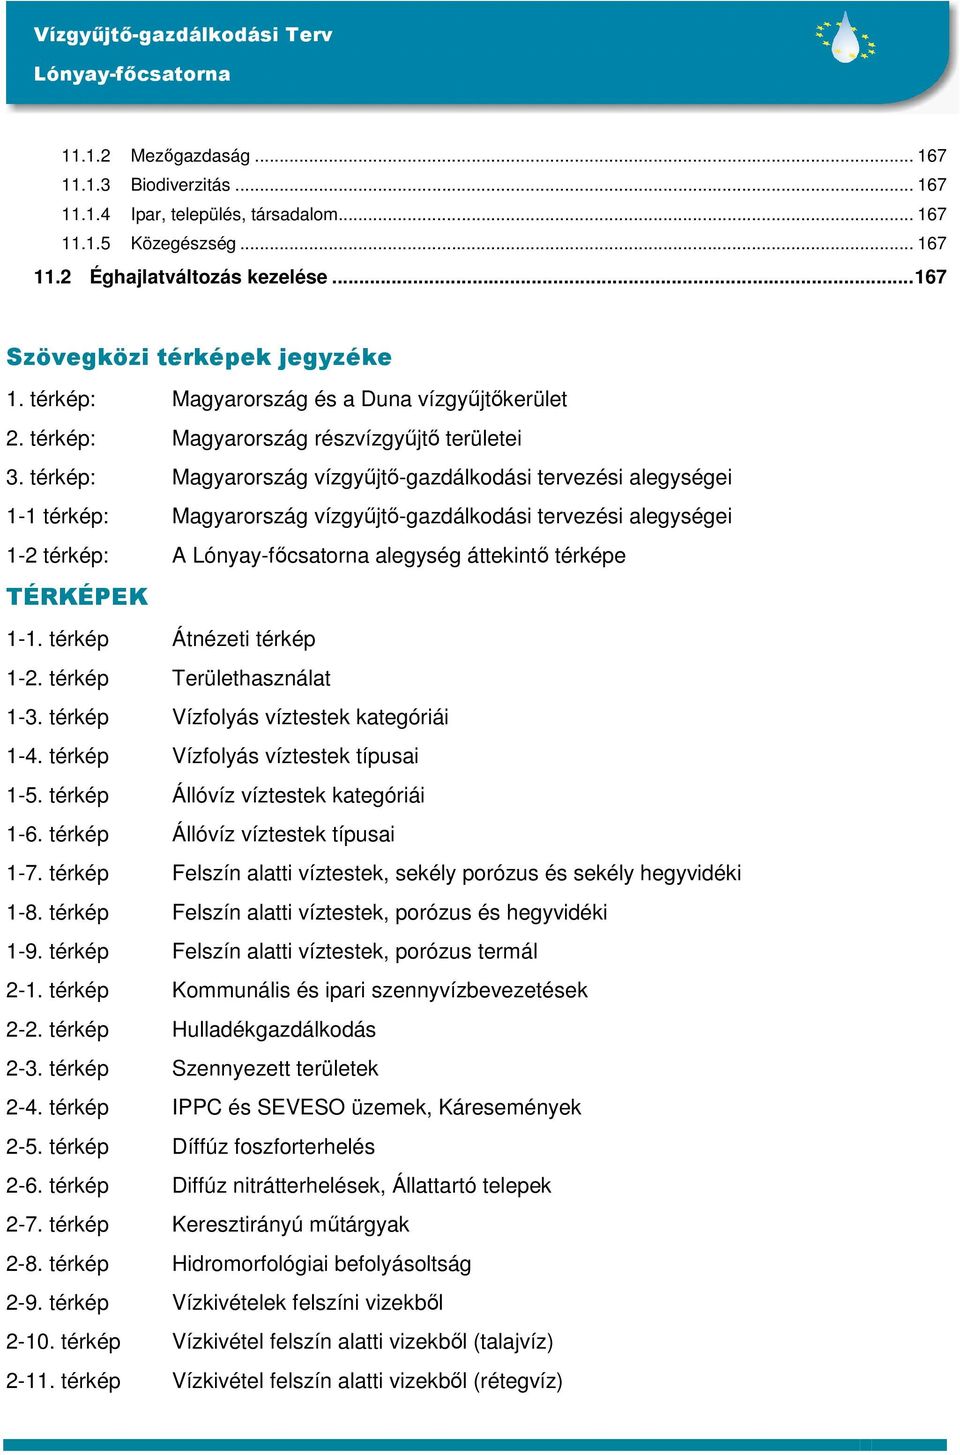 térkép: Magyarország vízgyőjtı-gazdálkodási tervezési alegységei 1-1 térkép: Magyarország vízgyőjtı-gazdálkodási tervezési alegységei 1-2 térkép: A alegység áttekintı térképe TÉRKÉPEK 1-1.